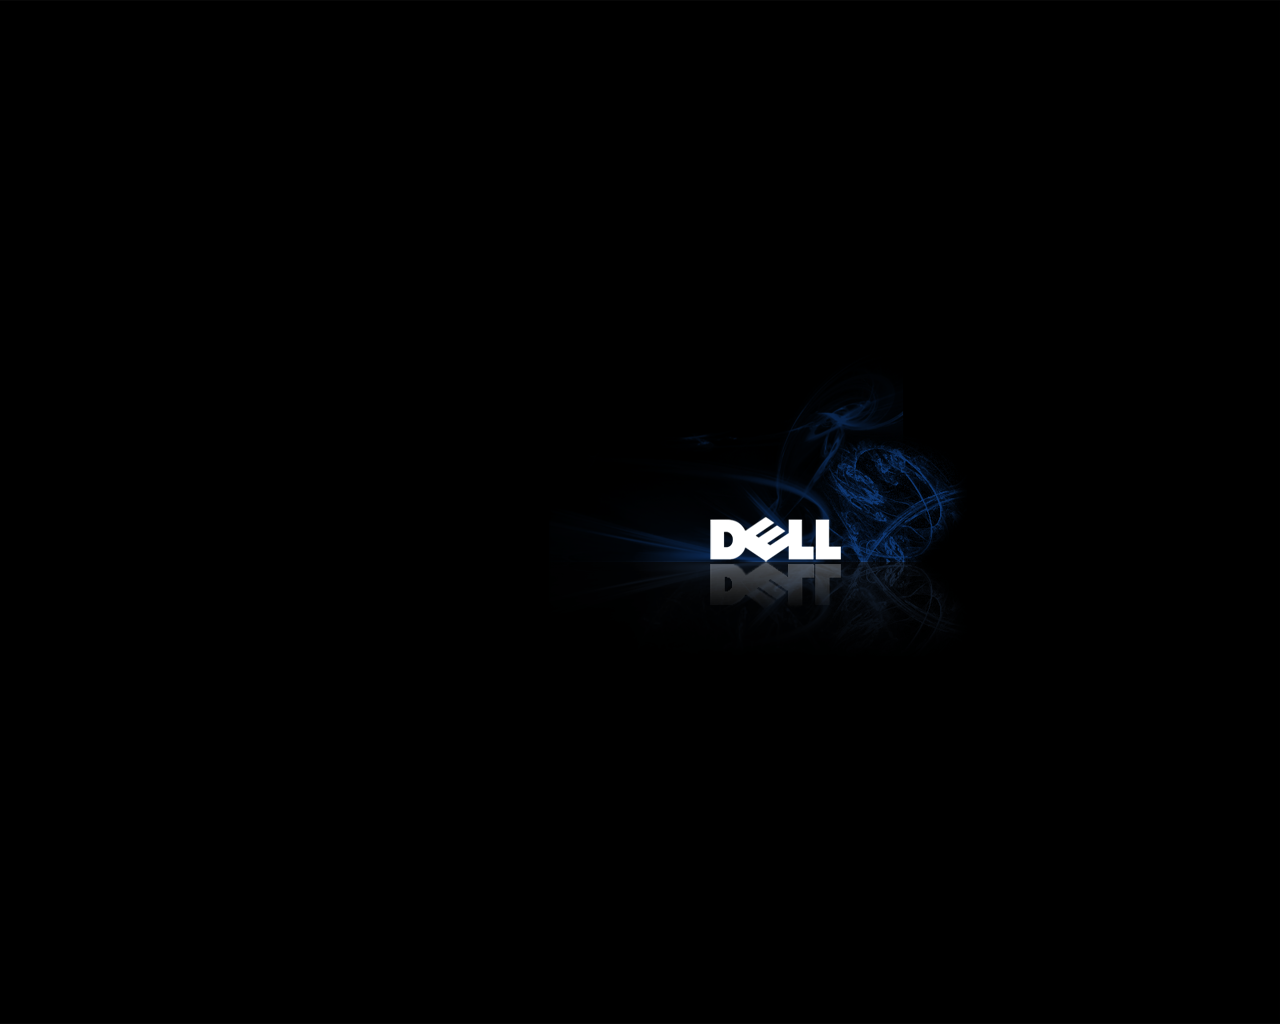 HD Wallpaper for Dell